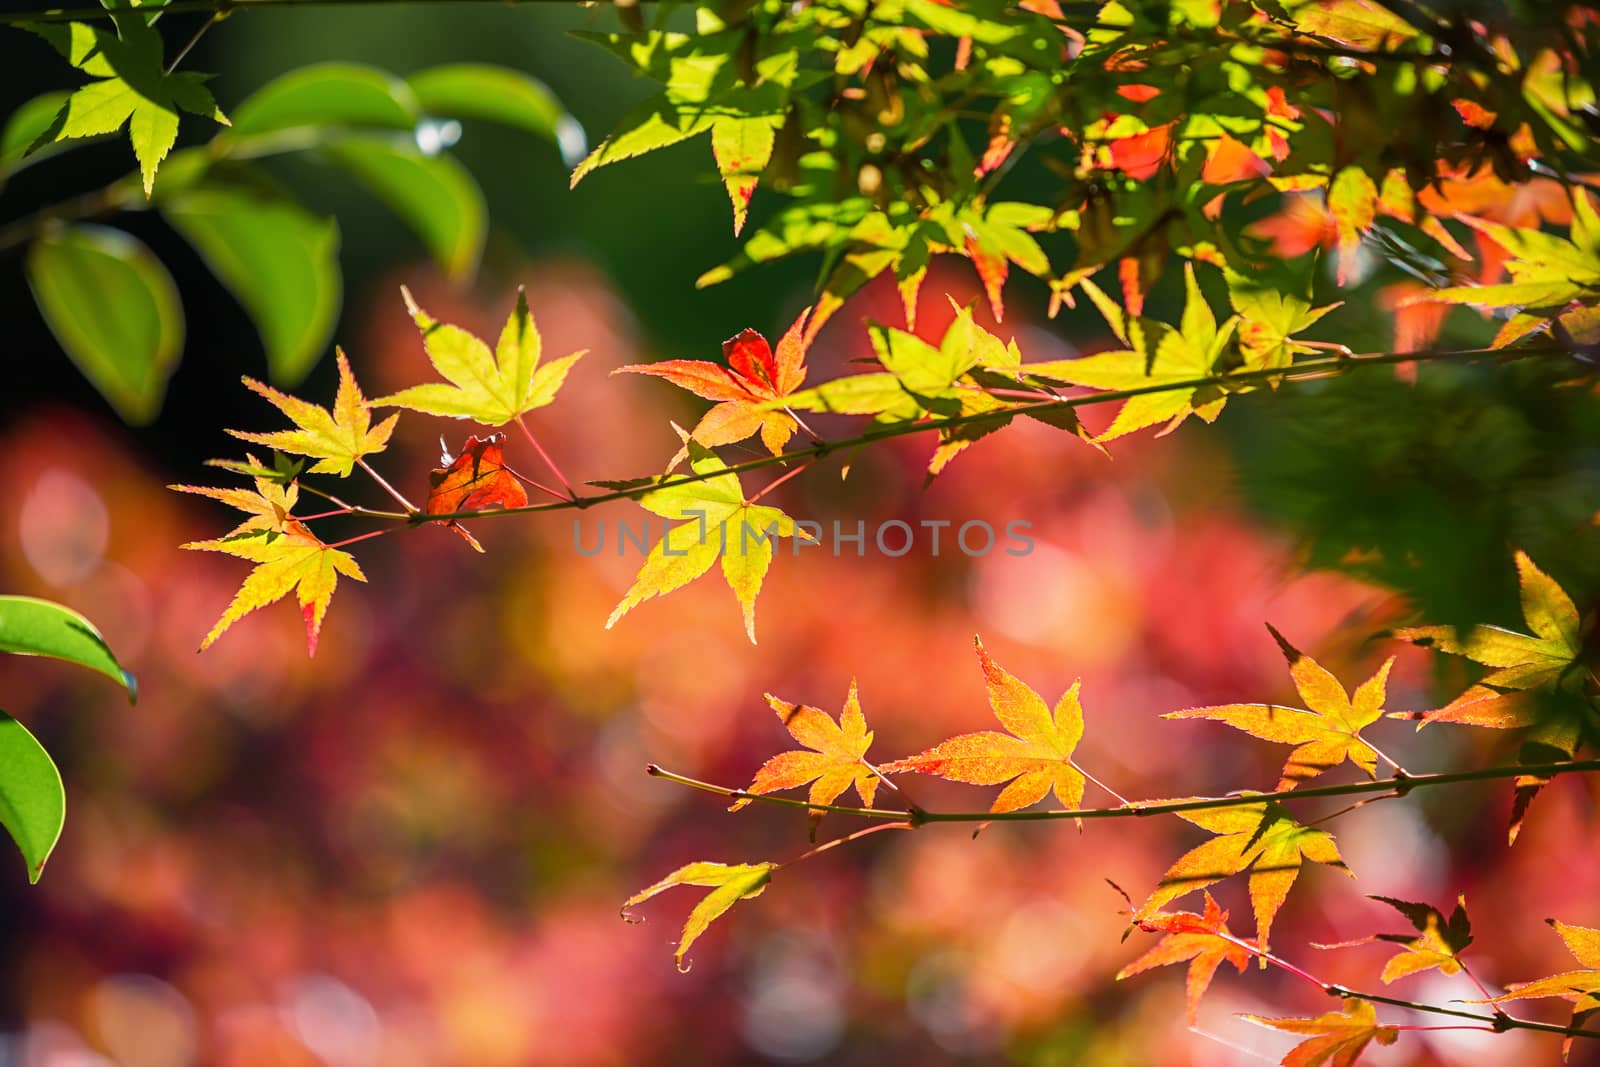 Colorful japanese maple (Acer palmatum) leaves during momiji season at Kinkakuji garden, Kyoto, Japan